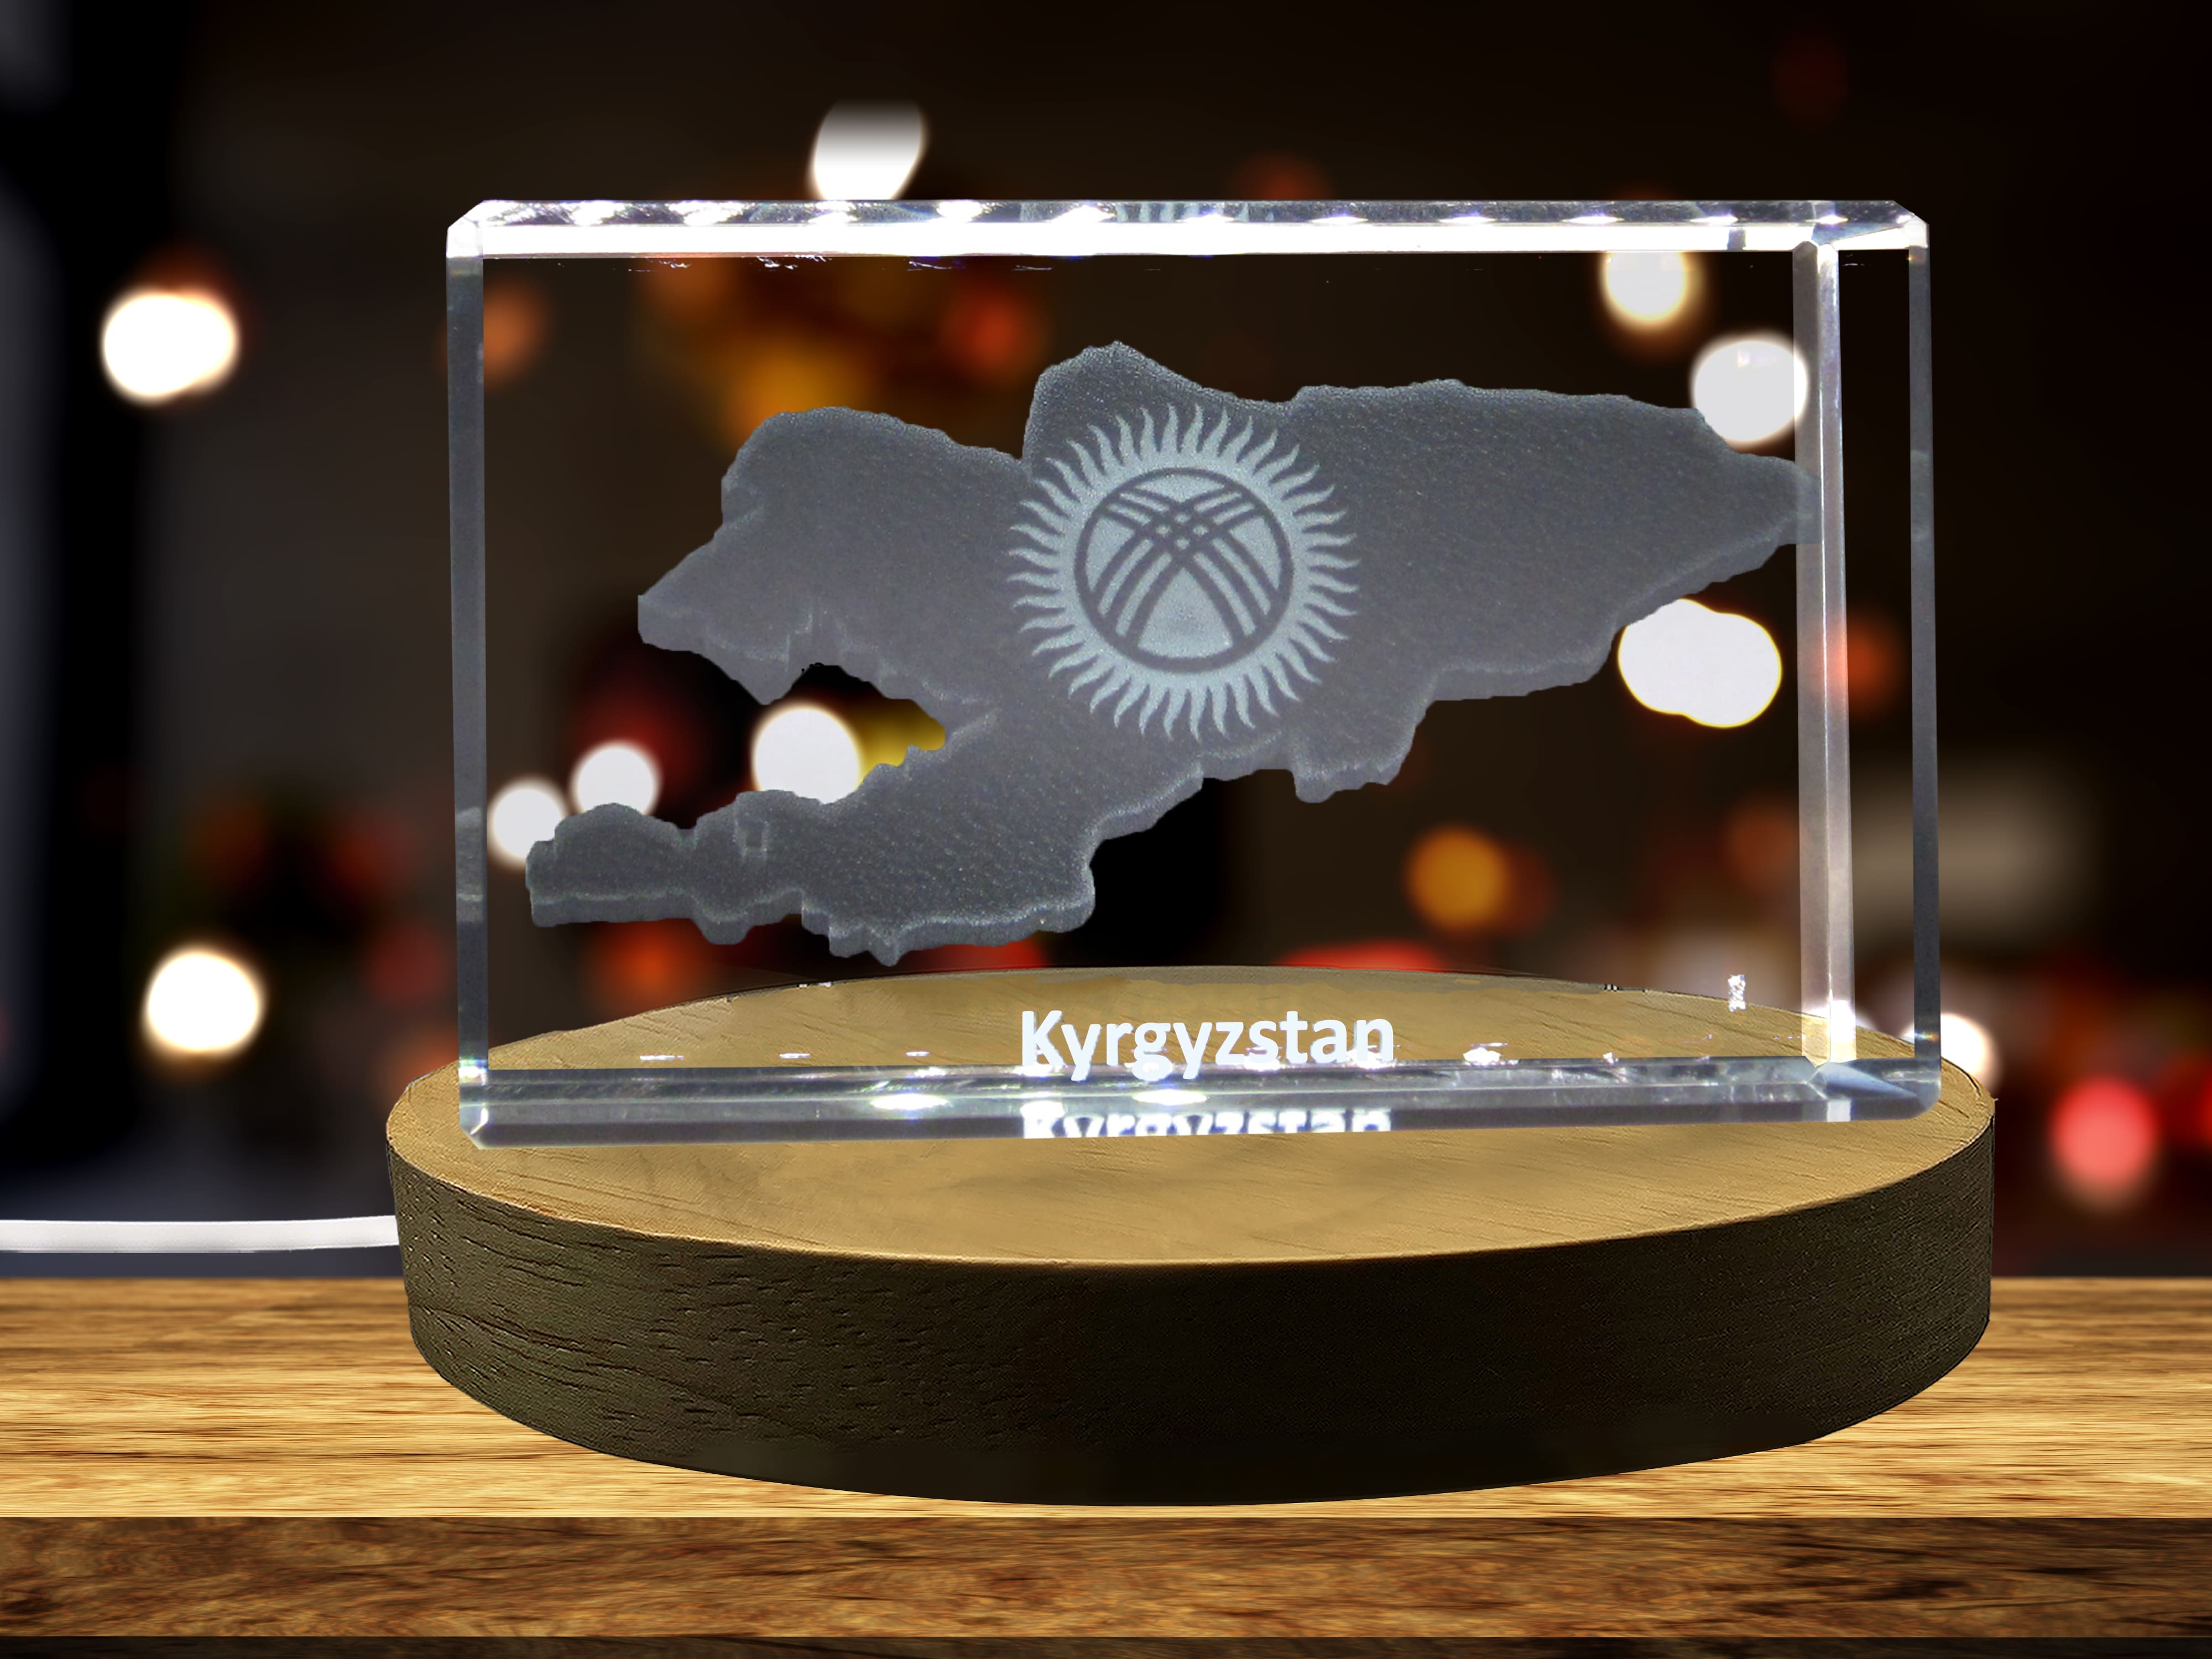 Kyrgyzstan 3D Engraved Crystal 3D Engraved Crystal Keepsake/Gift/Decor/Collectible/Souvenir A&B Crystal Collection